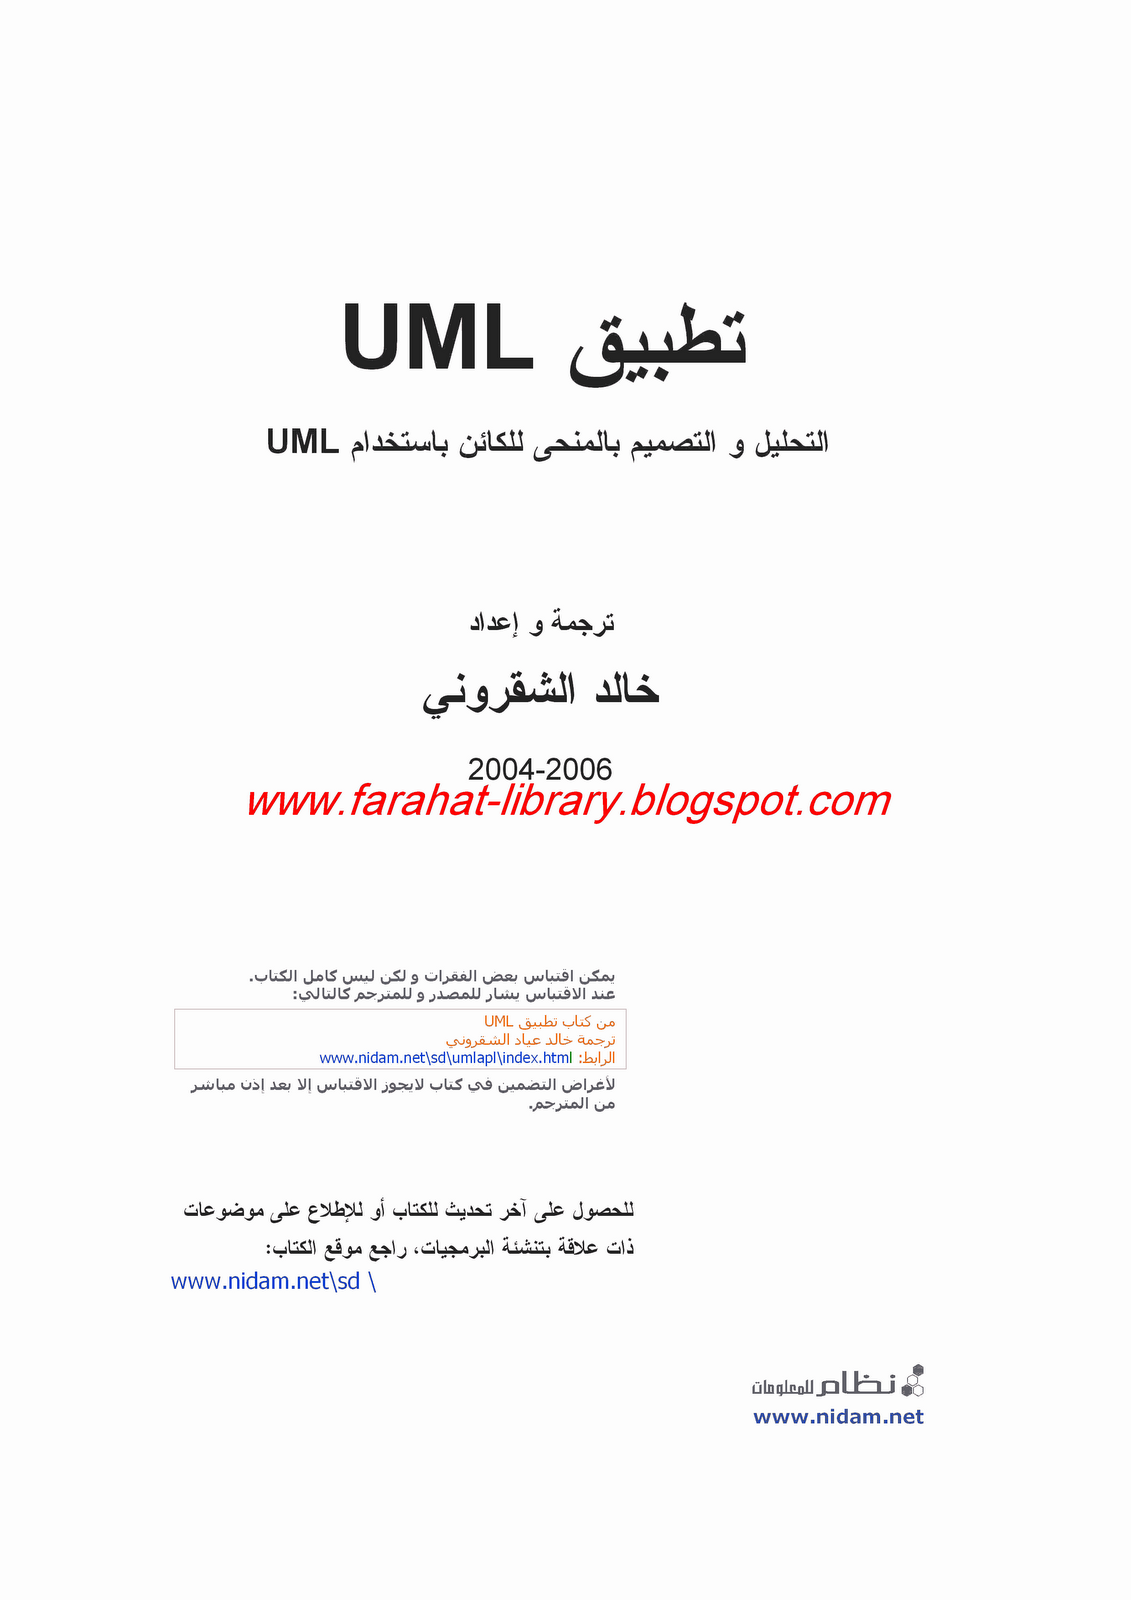 كتاب هندسة البرمجيات بعنوان تطبيق UML التحليل و التصميم  Microsoft+Word+-+%D8%AA%D8%B7%D8%A8%D9%8A%D9%82+UML.page1